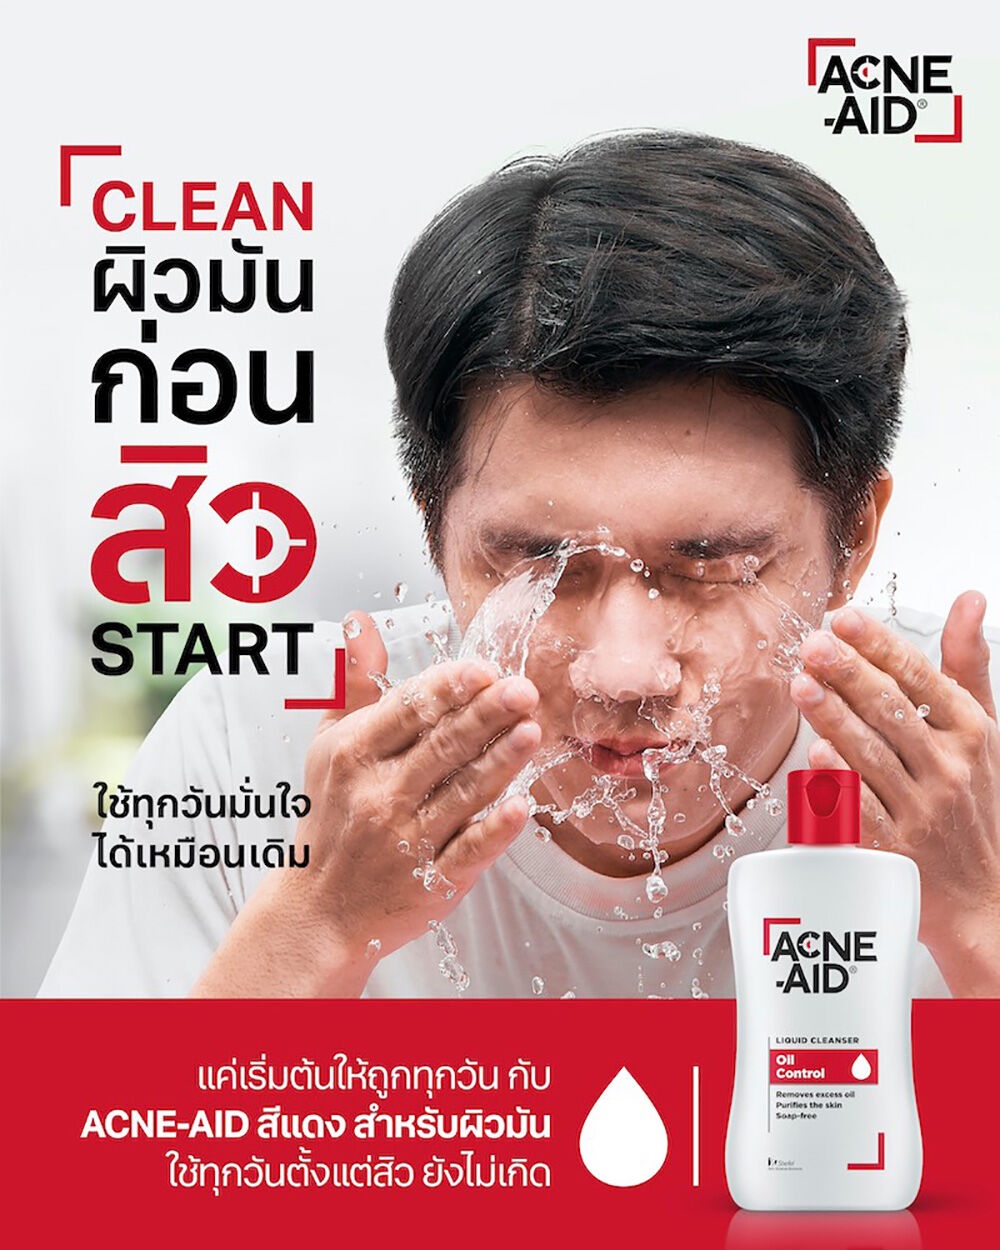 ภาพที่ให้รายละเอียดเกี่ยวกับ ACNE-AID Liquid Cleanser เเอคเน่เอด คลีนเซอร์ล้างหน้าสำหรับผู้มีปัญหาสิว สูตรสีแดงสำหรับผิวมัน.